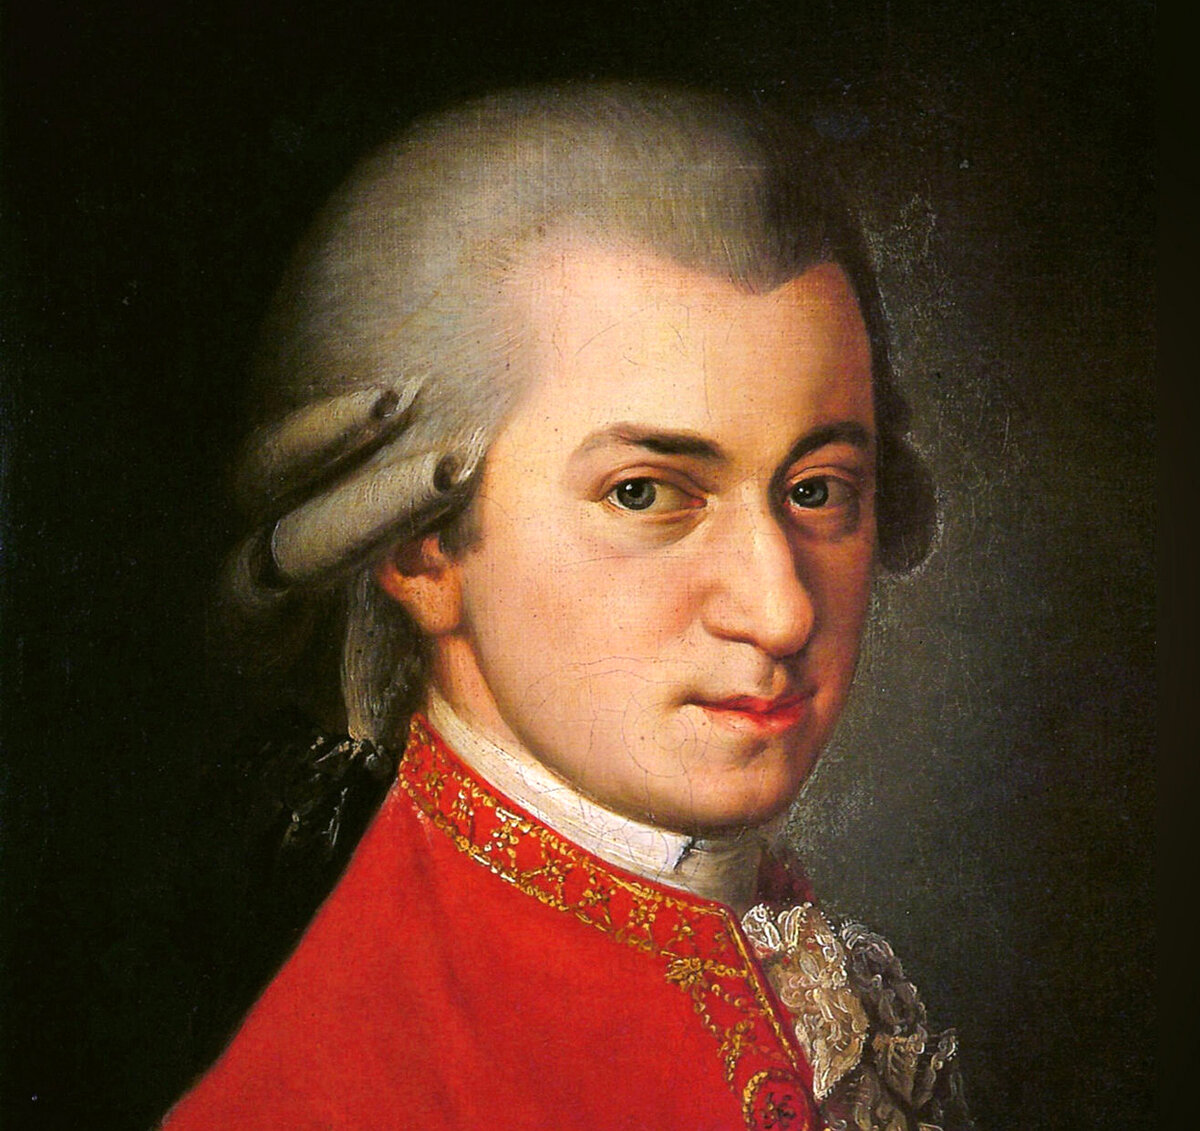 Портрет австрийского композитора Вольфганга Амадея Моцарта (1756-1791), написанный Барбарой Крофт в 1819 году.